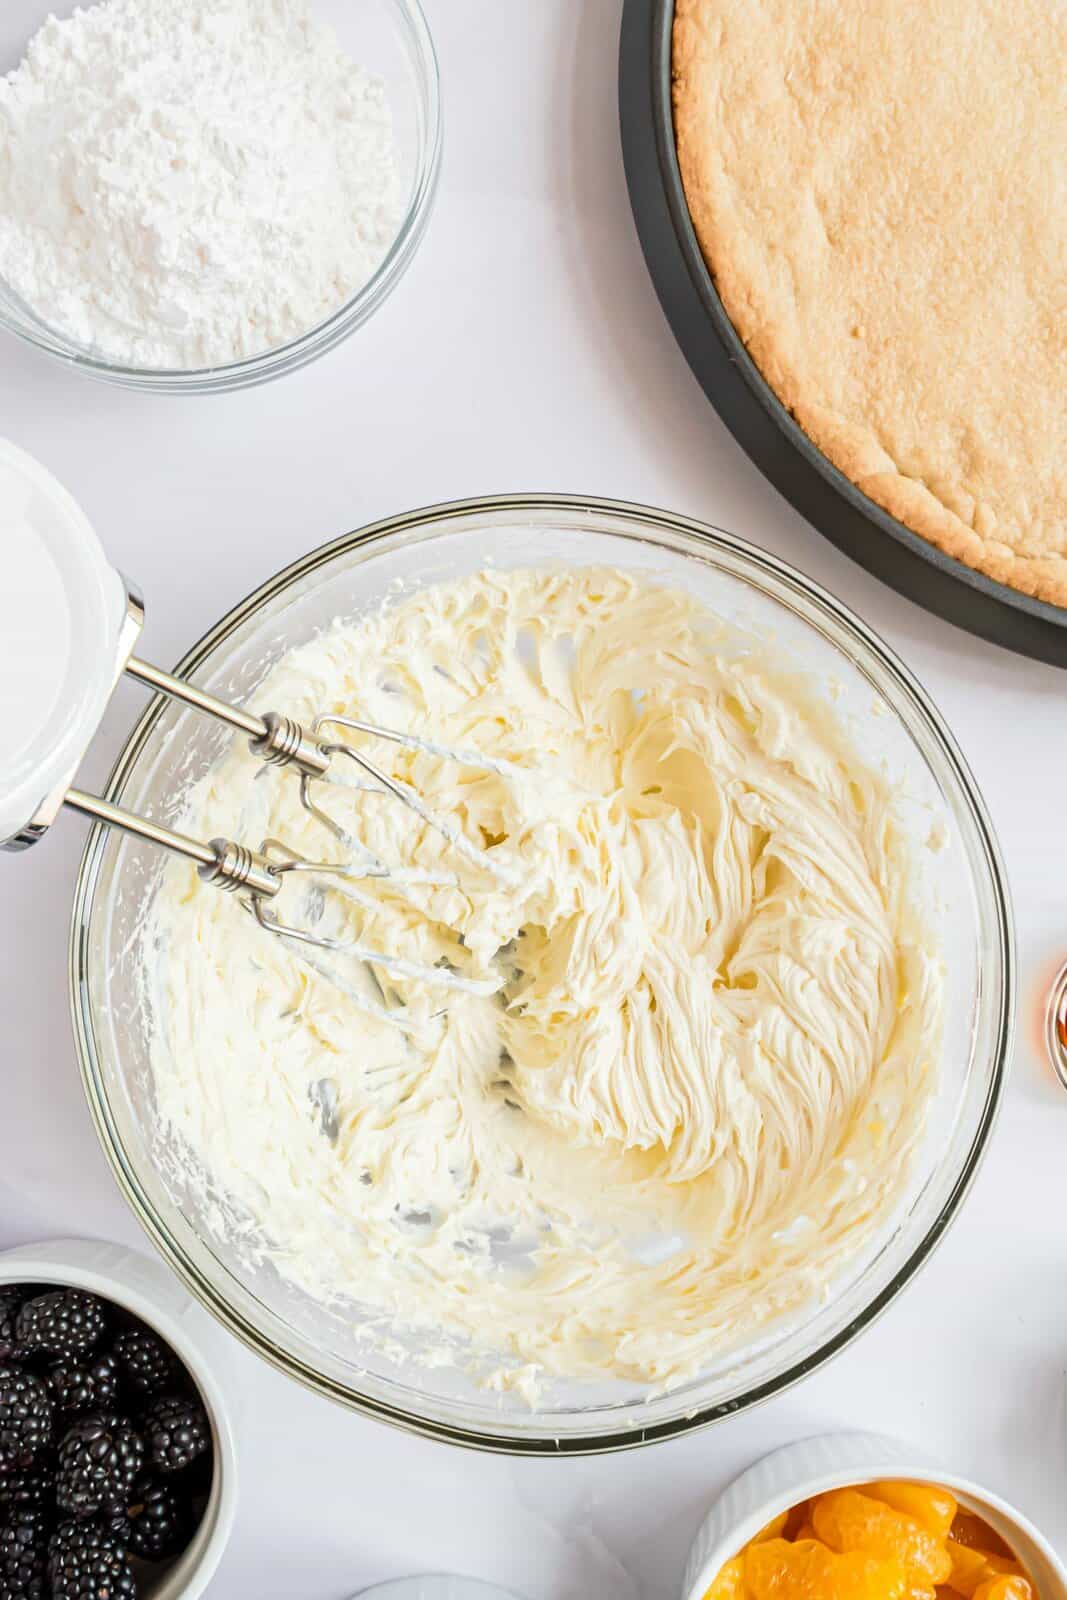 Burro e crema di formaggio sbattuti insieme in una ciotola.